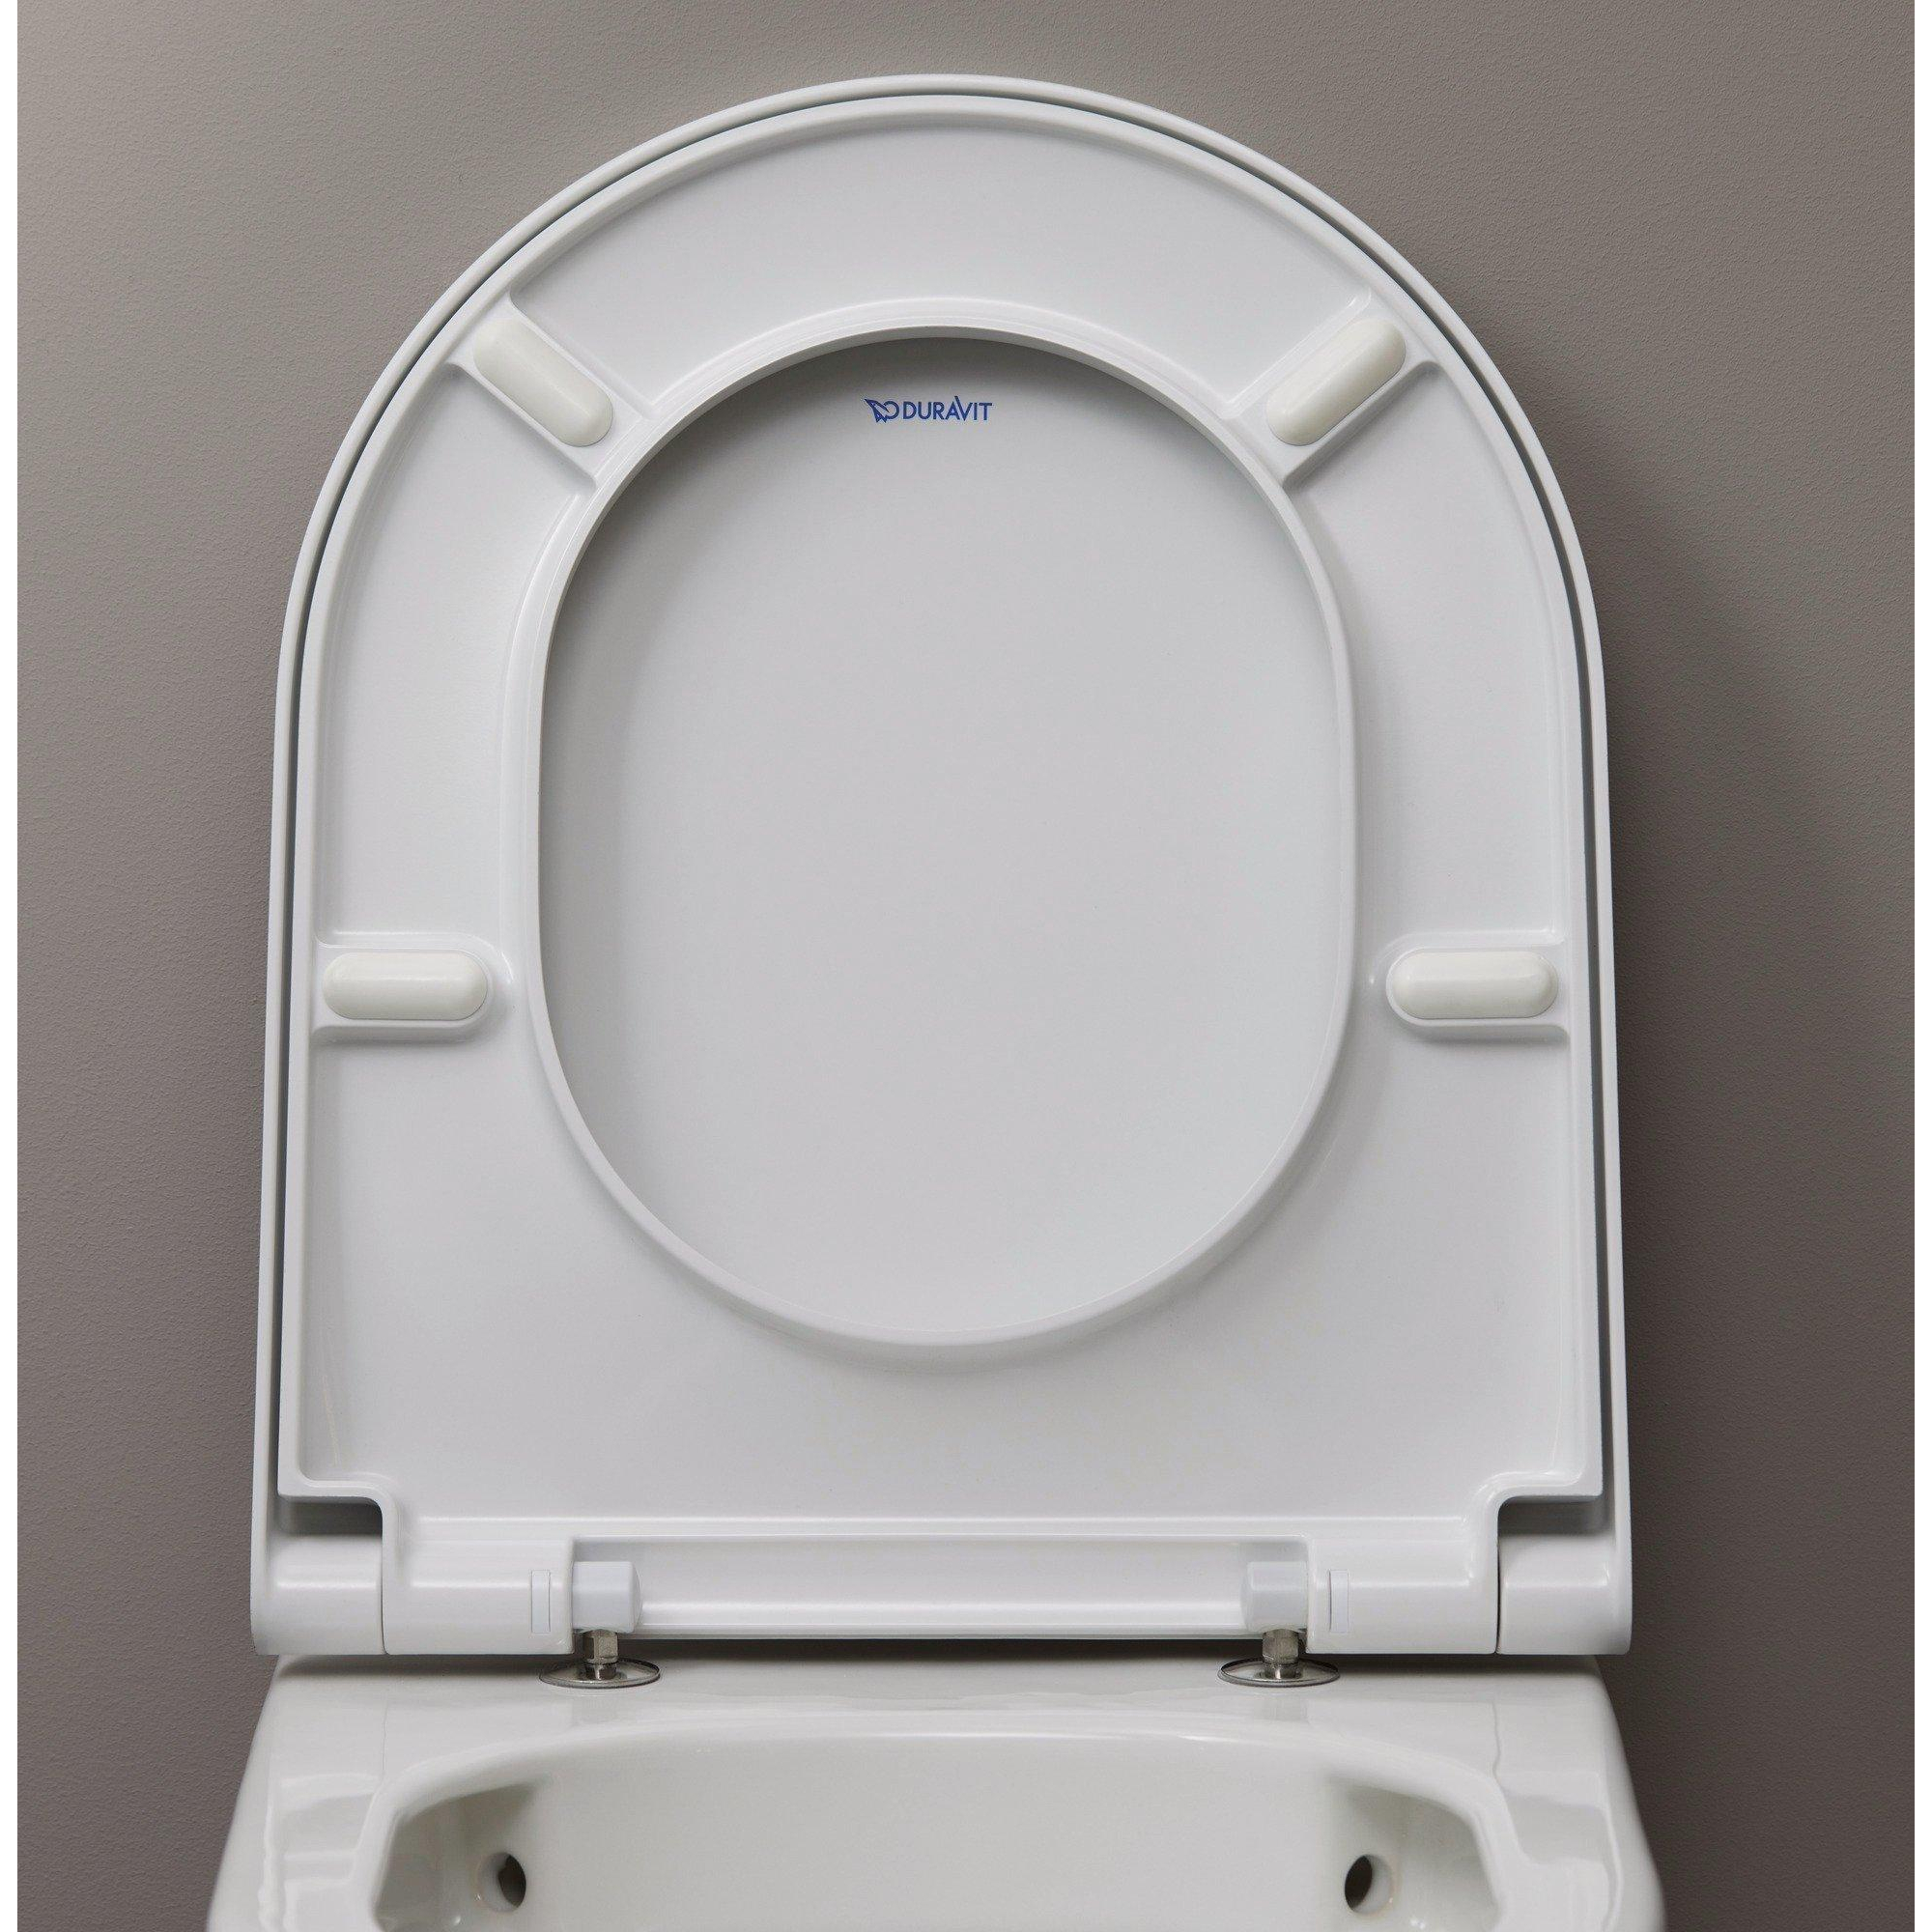 Siège WC Duravit Qatego, plastique thermodurci, abaissement automatique,  blanc brillant 463x369x44mm, 0026890000